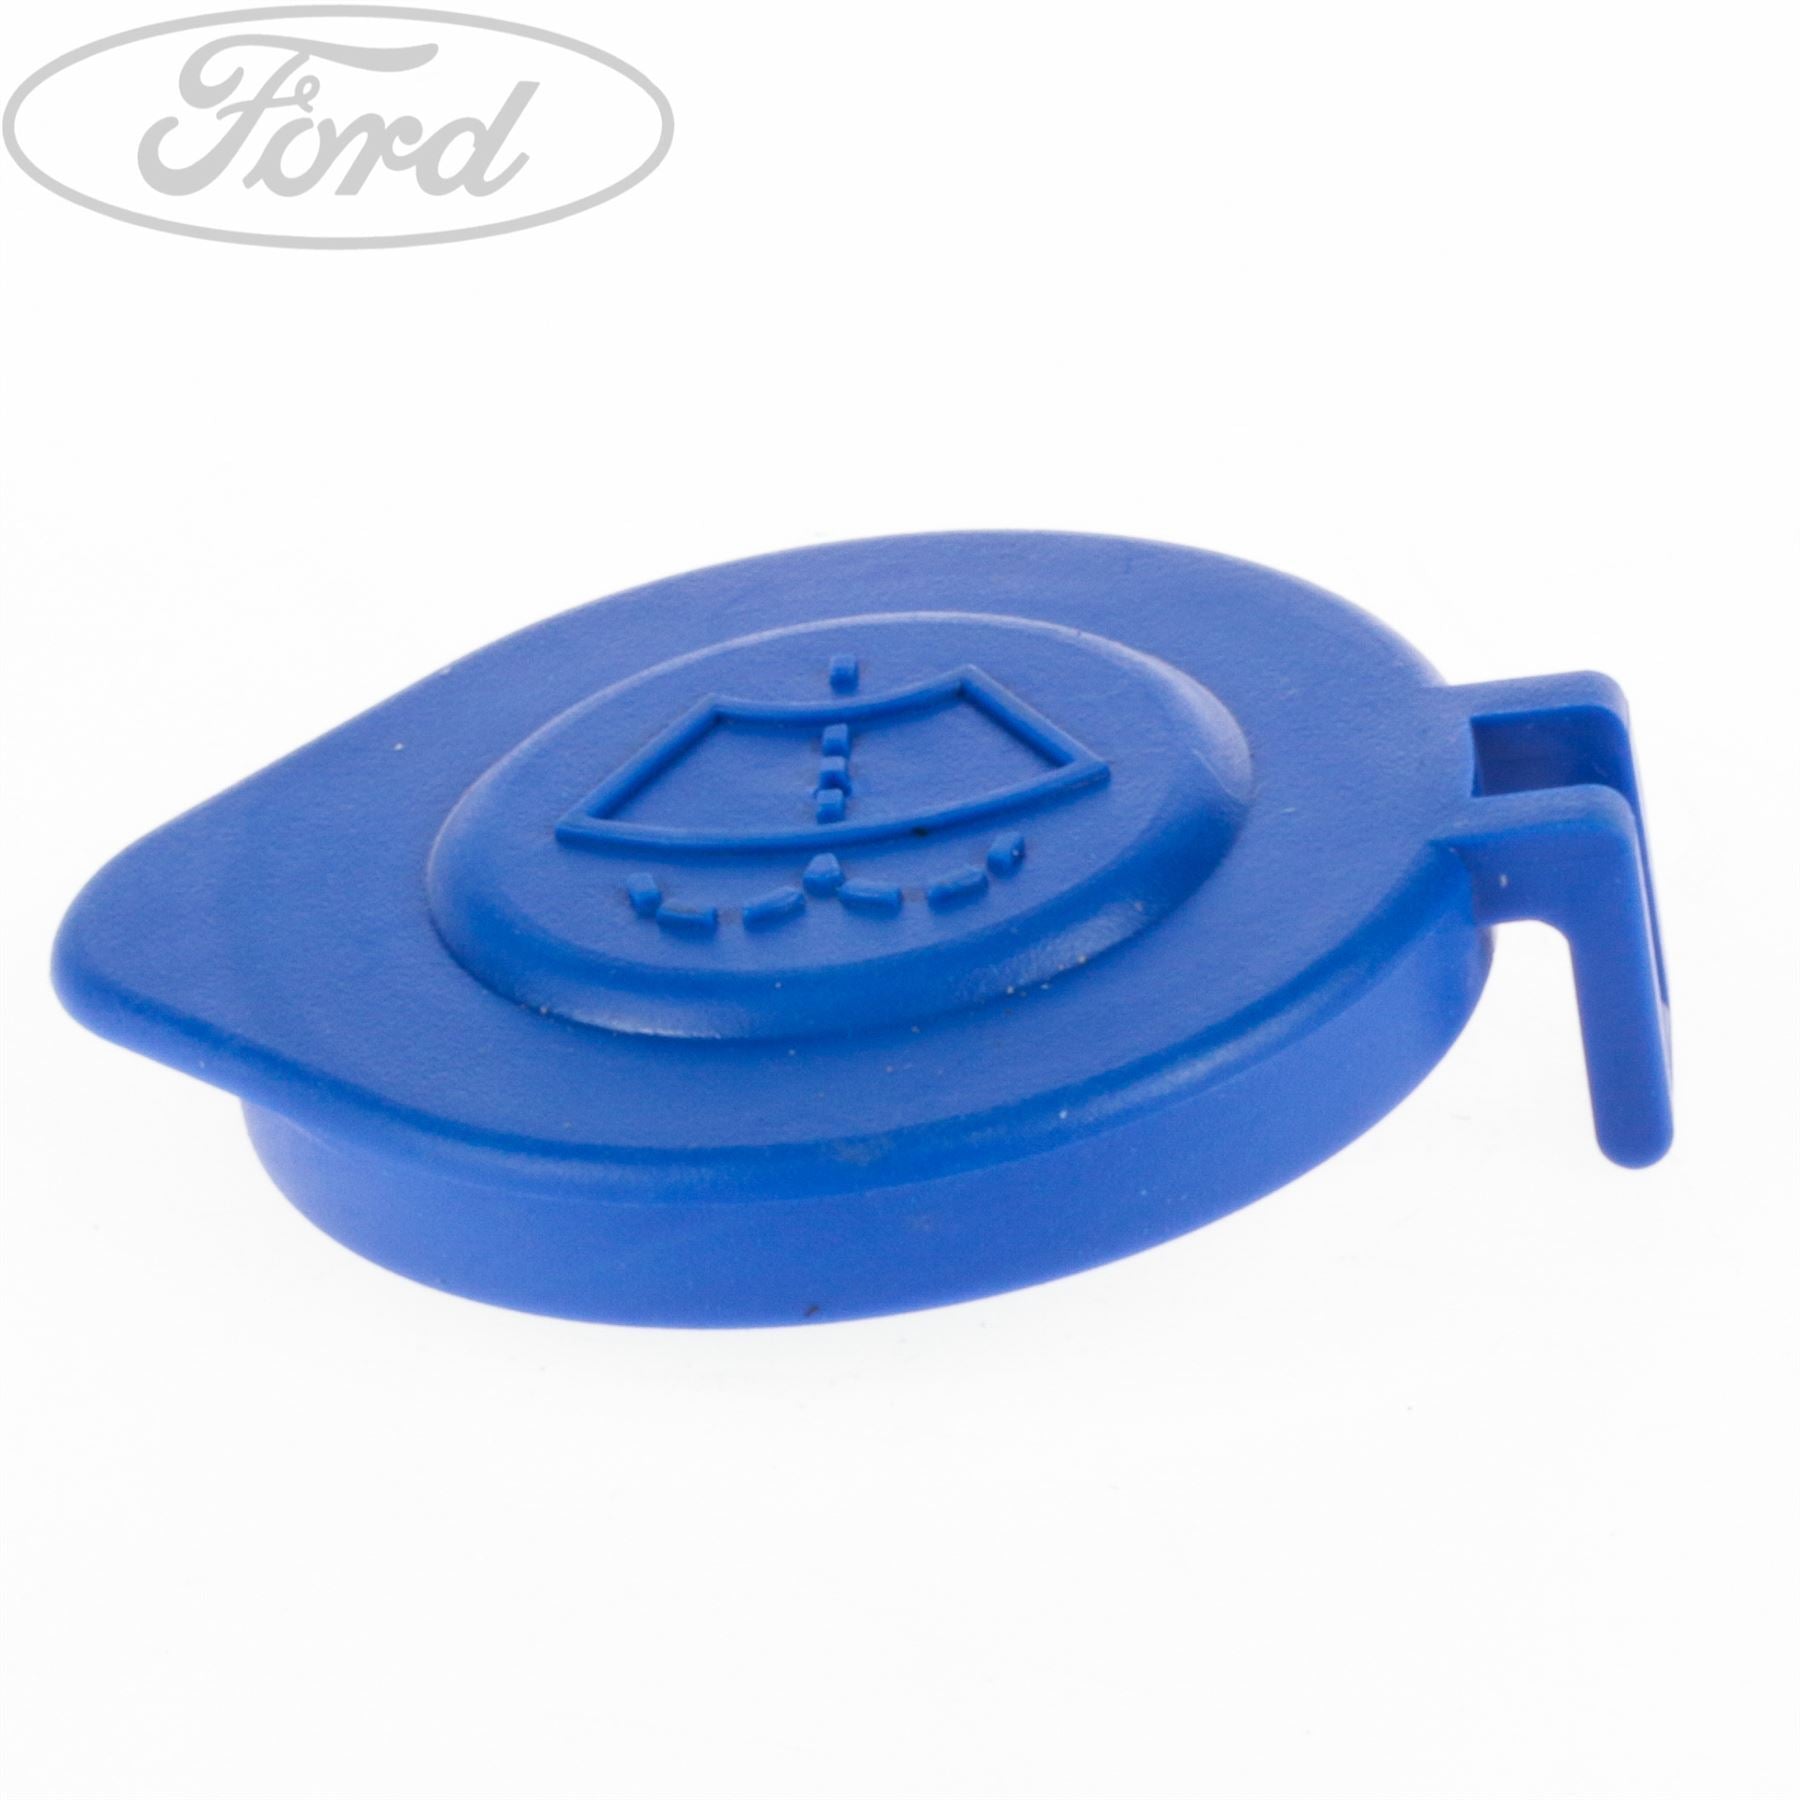 Original Ford Deckel Scheibenwaschbehälter Wischwasserbehälter 1520310 Kappe  kaufen bei